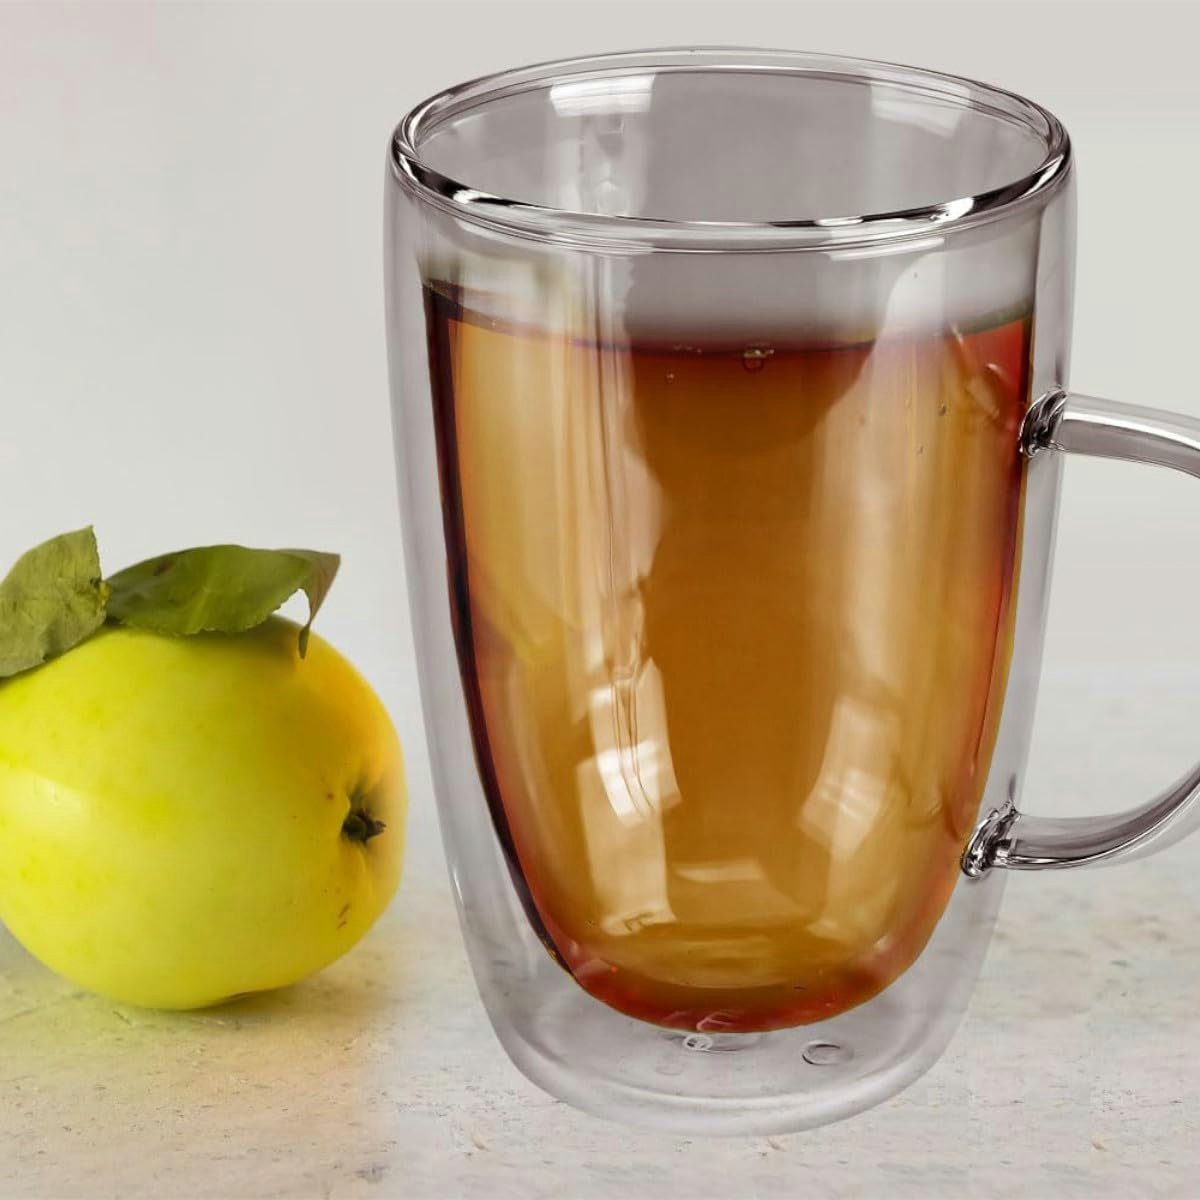 Dimono Tasse Doppelwandiges Trinkglas mit Longdrink- Wasser- Cocktailgläser Griff ml, 300 & Borosilikatglas